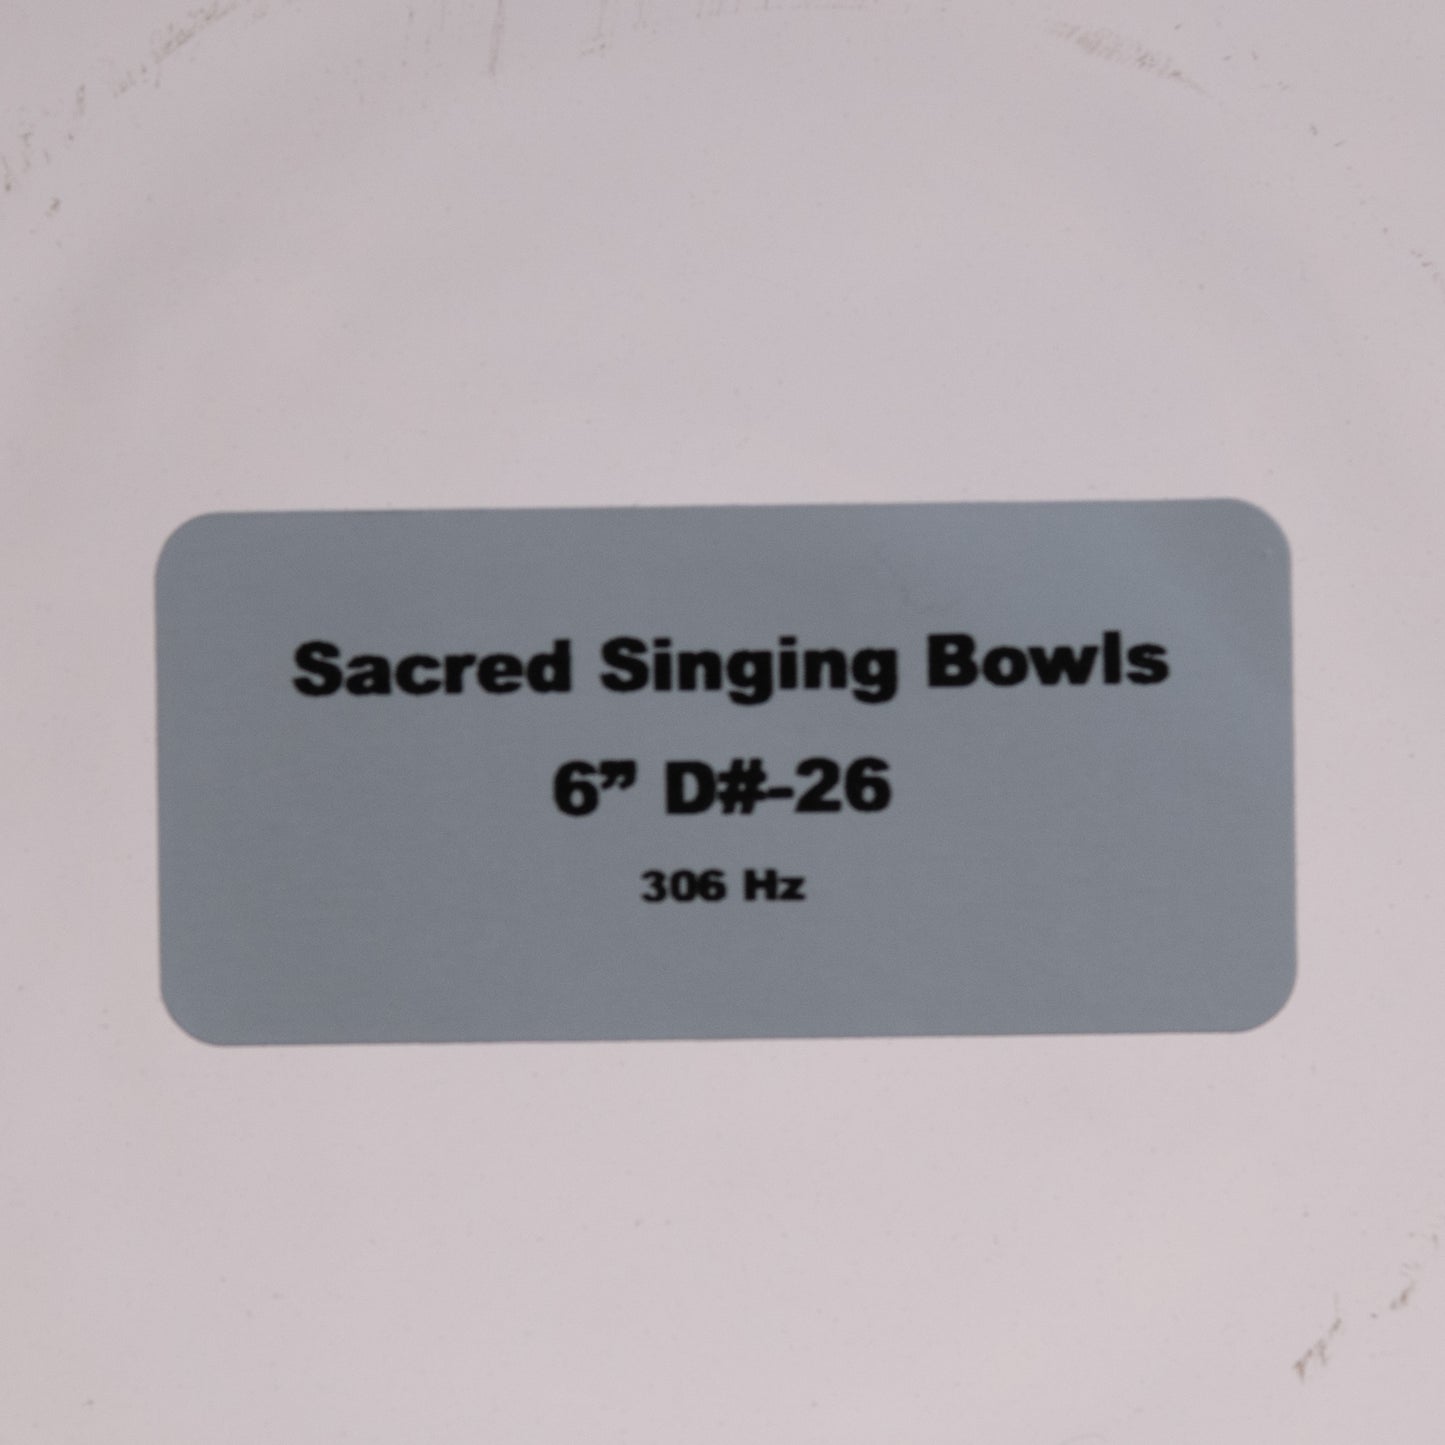 6" D#-26 Clear Quartz Crystal Singing Bowl, Sacred Singing Bowls